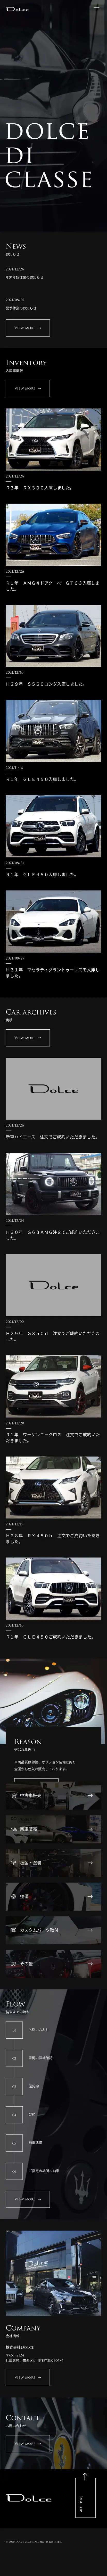 キャプチャ画面 会社名:株式会社DoLceプロジェクト名:DoLce 画面名:A デバイス名:SPカテゴリ:自動車・タイヤタグ:SP,A